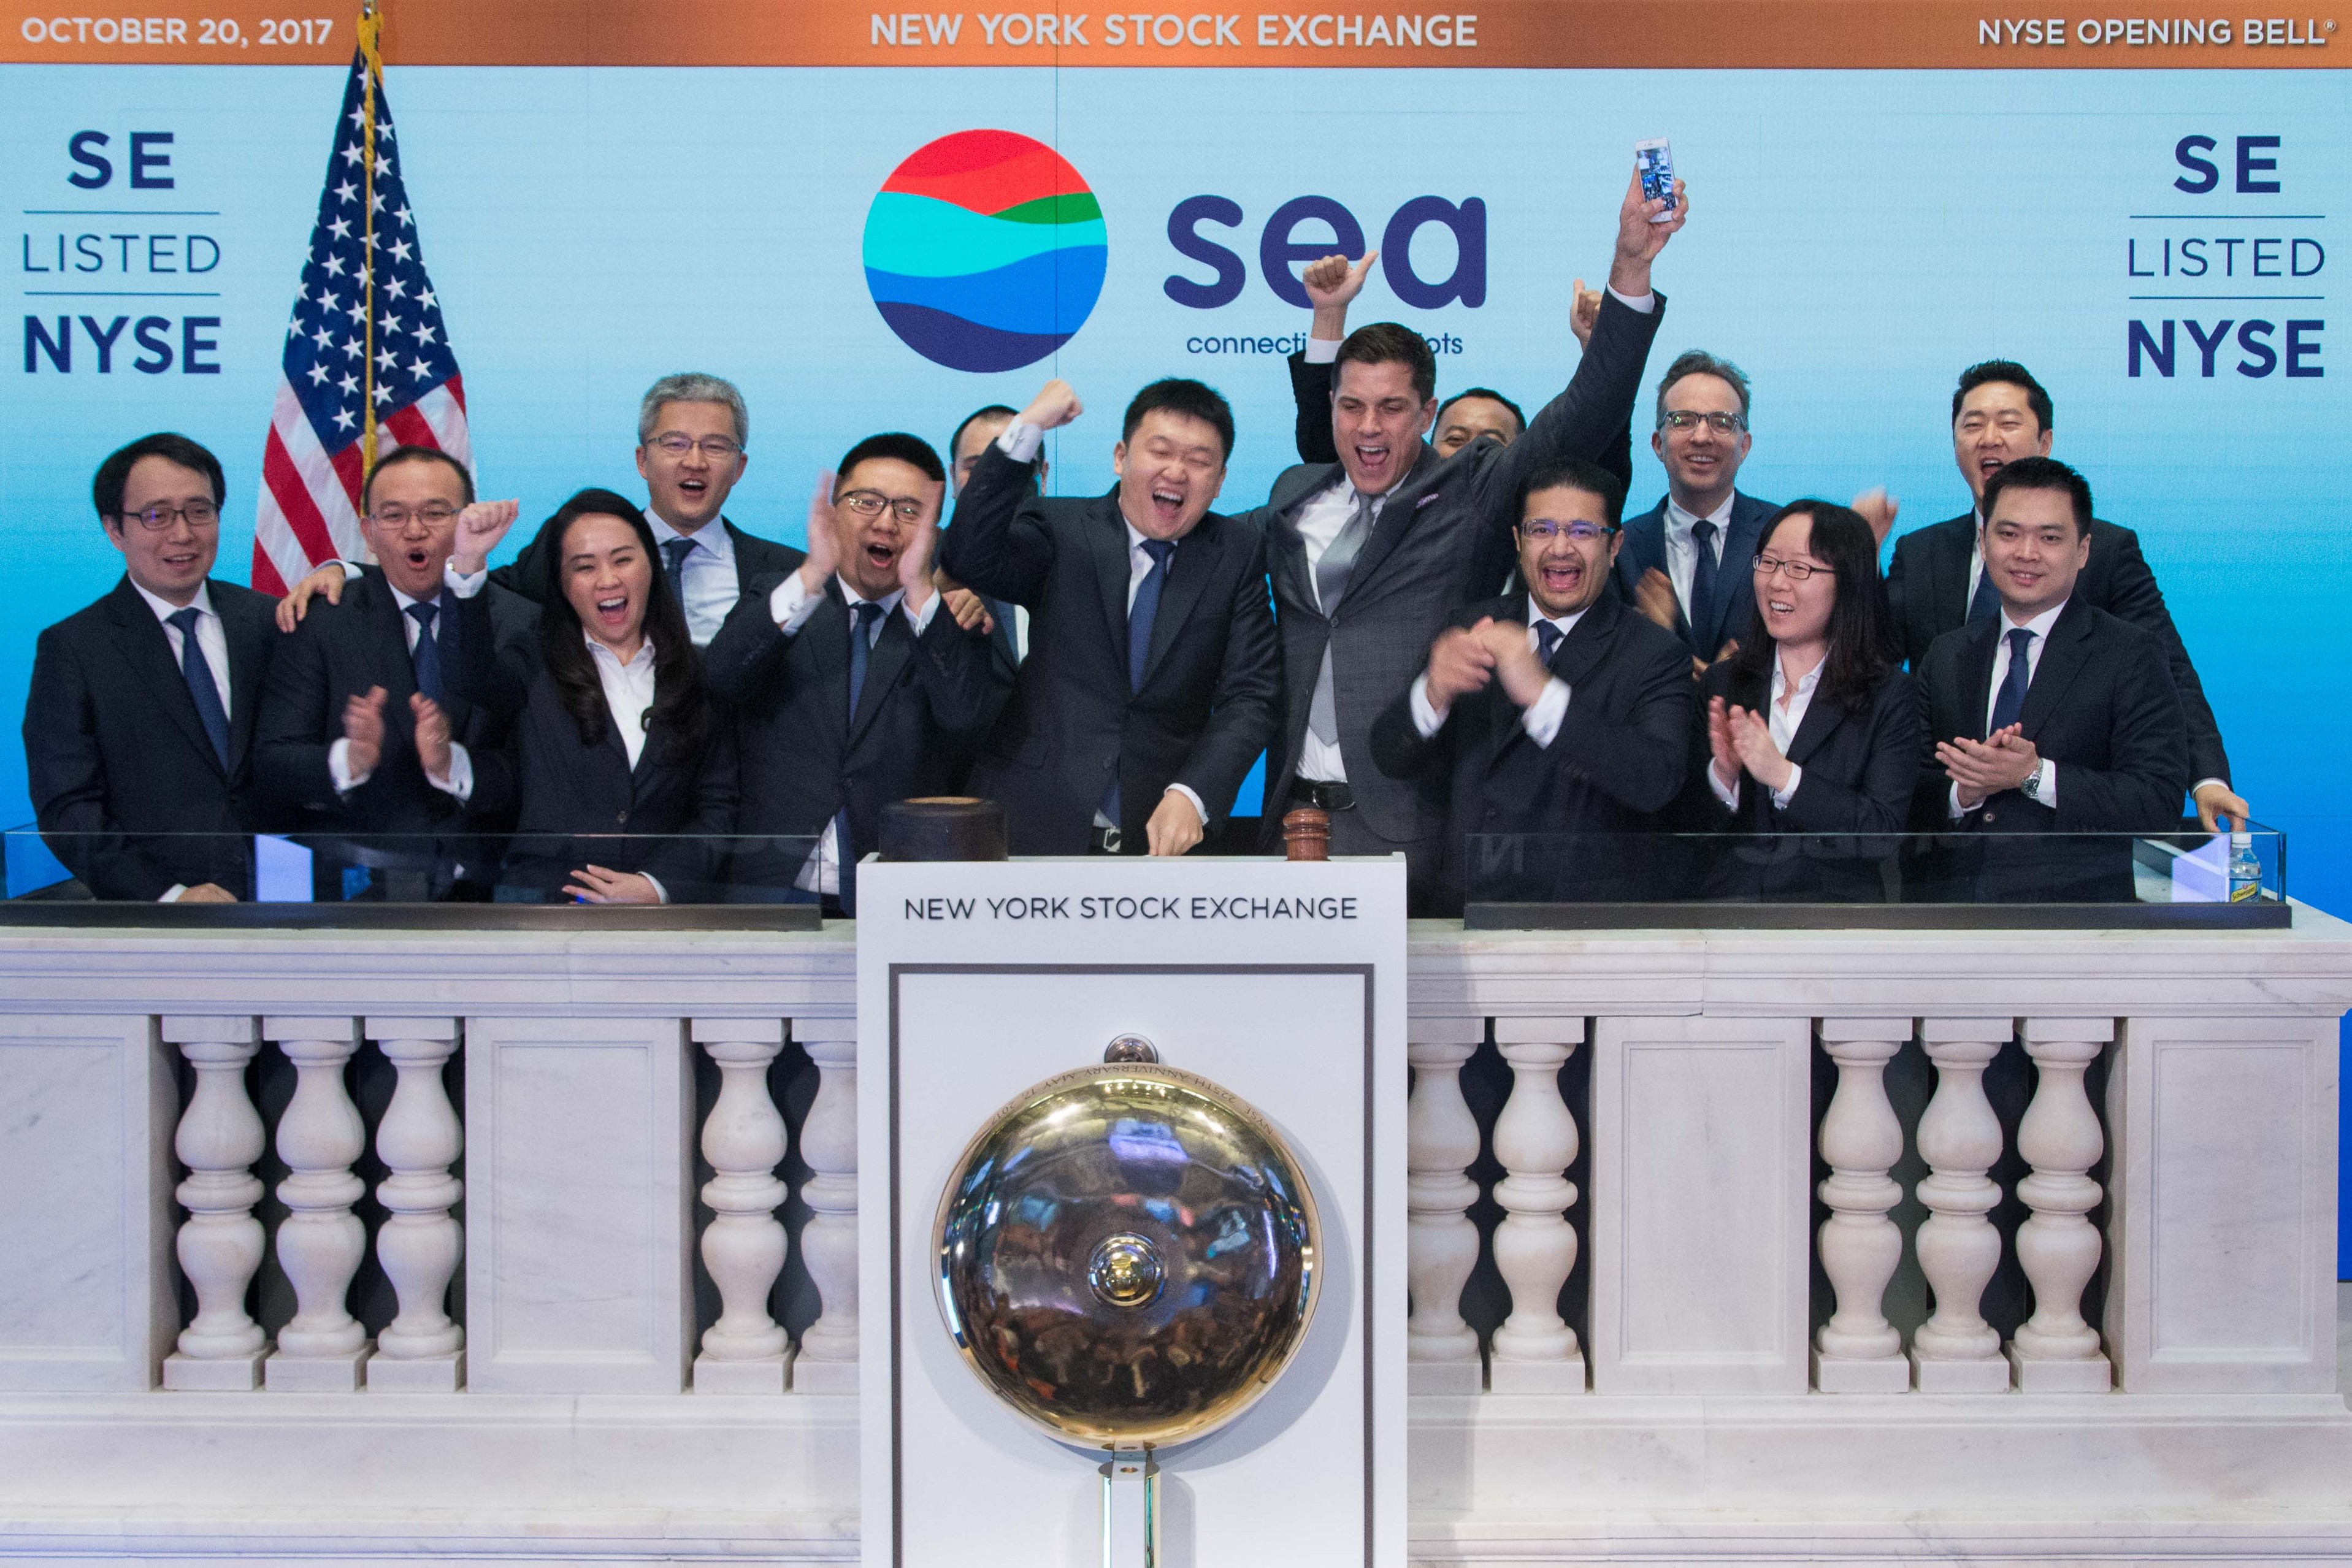 蝦皮母公司Sea紐約掛牌上市，力促東南亞用戶、中小企業共成長